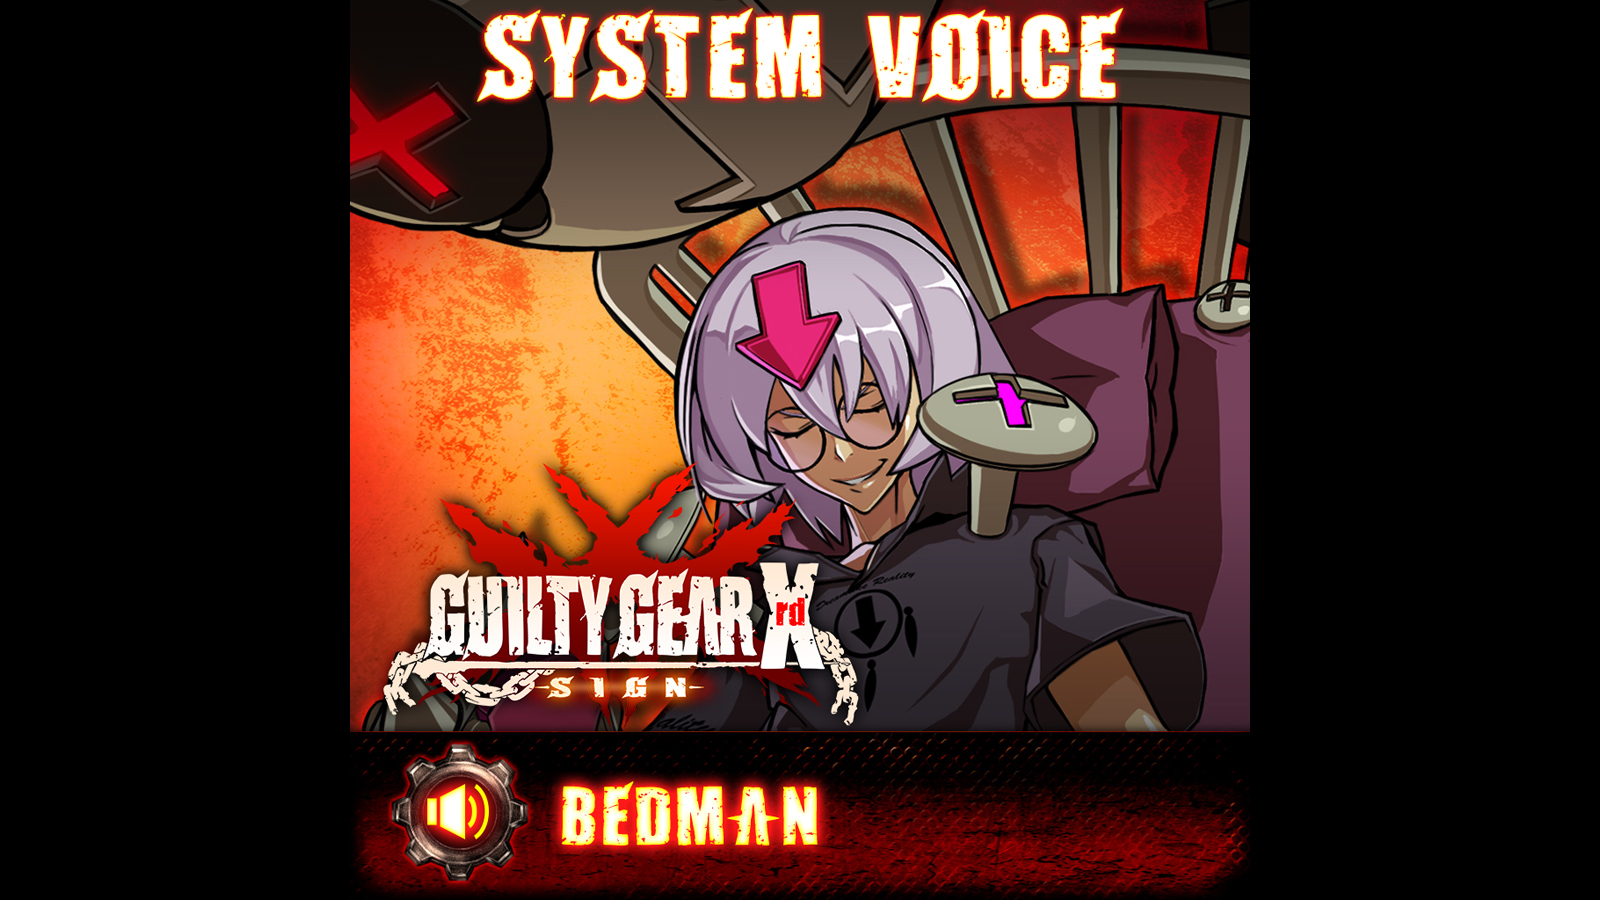 GGXrd System Voice - BEDMAN Featured Screenshot #1